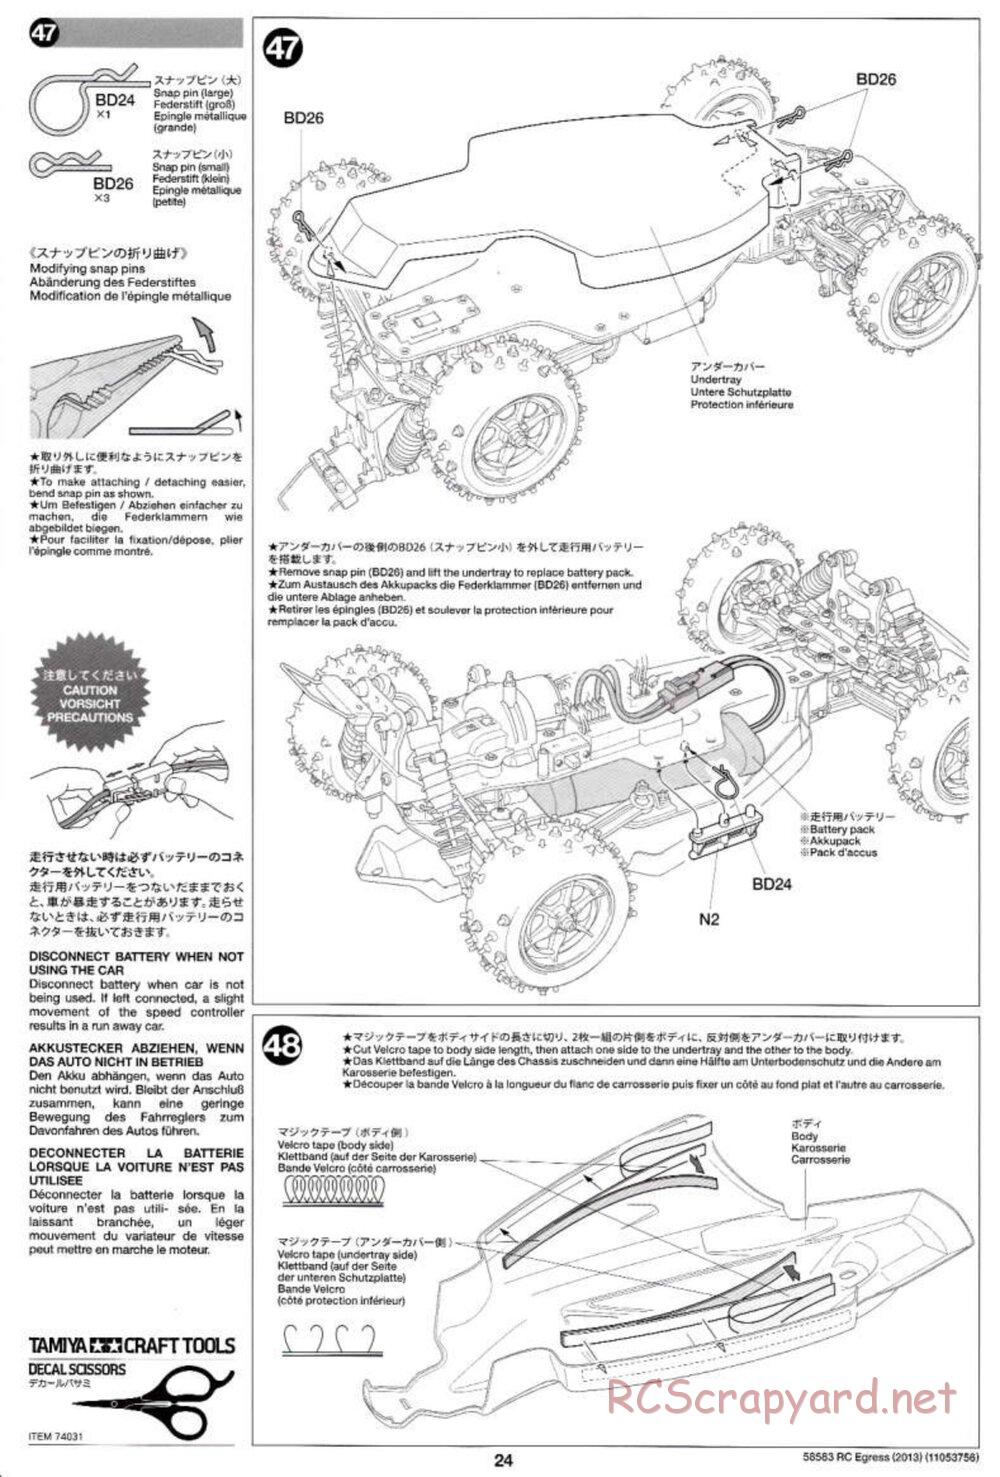 Tamiya - Egress 2013 - AV Chassis - Manual - Page 24